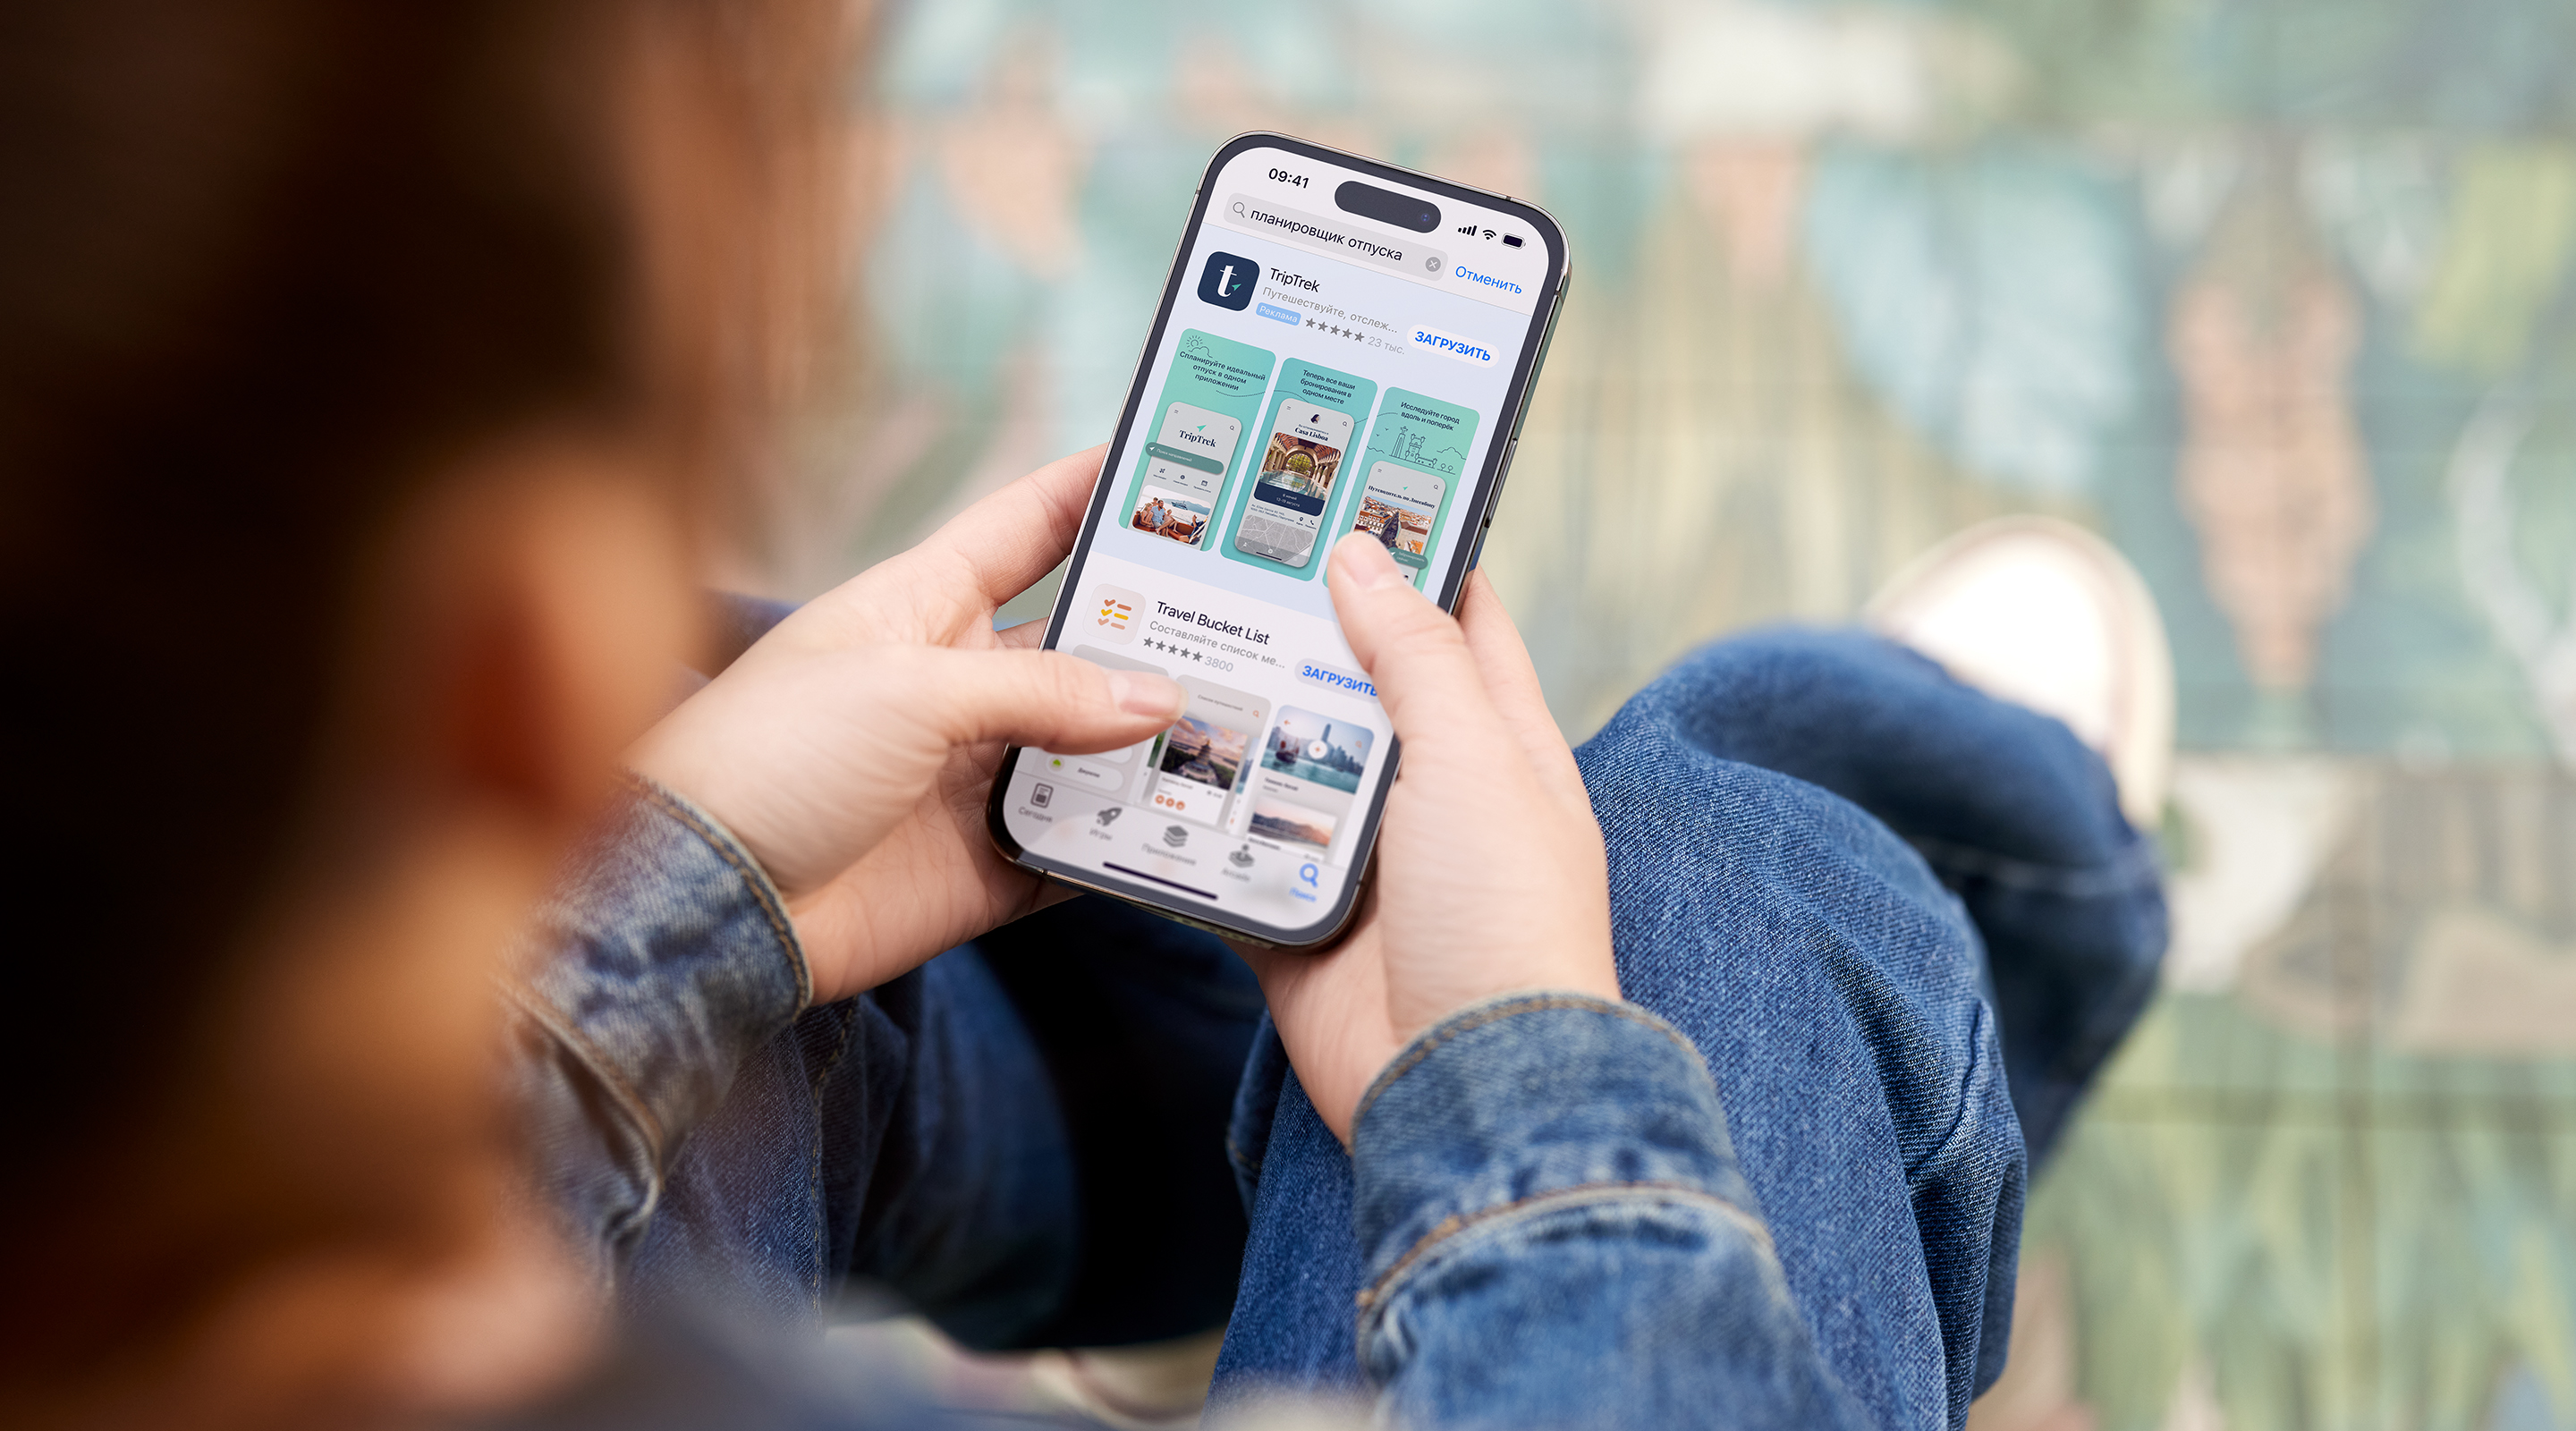 Пользователь двумя руками держит iPhone. В открытом окне App Store показана реклама взятого для примера приложения TripTrek в результатах поиска, а в поле поиска введён запрос «планировщик отпуска».